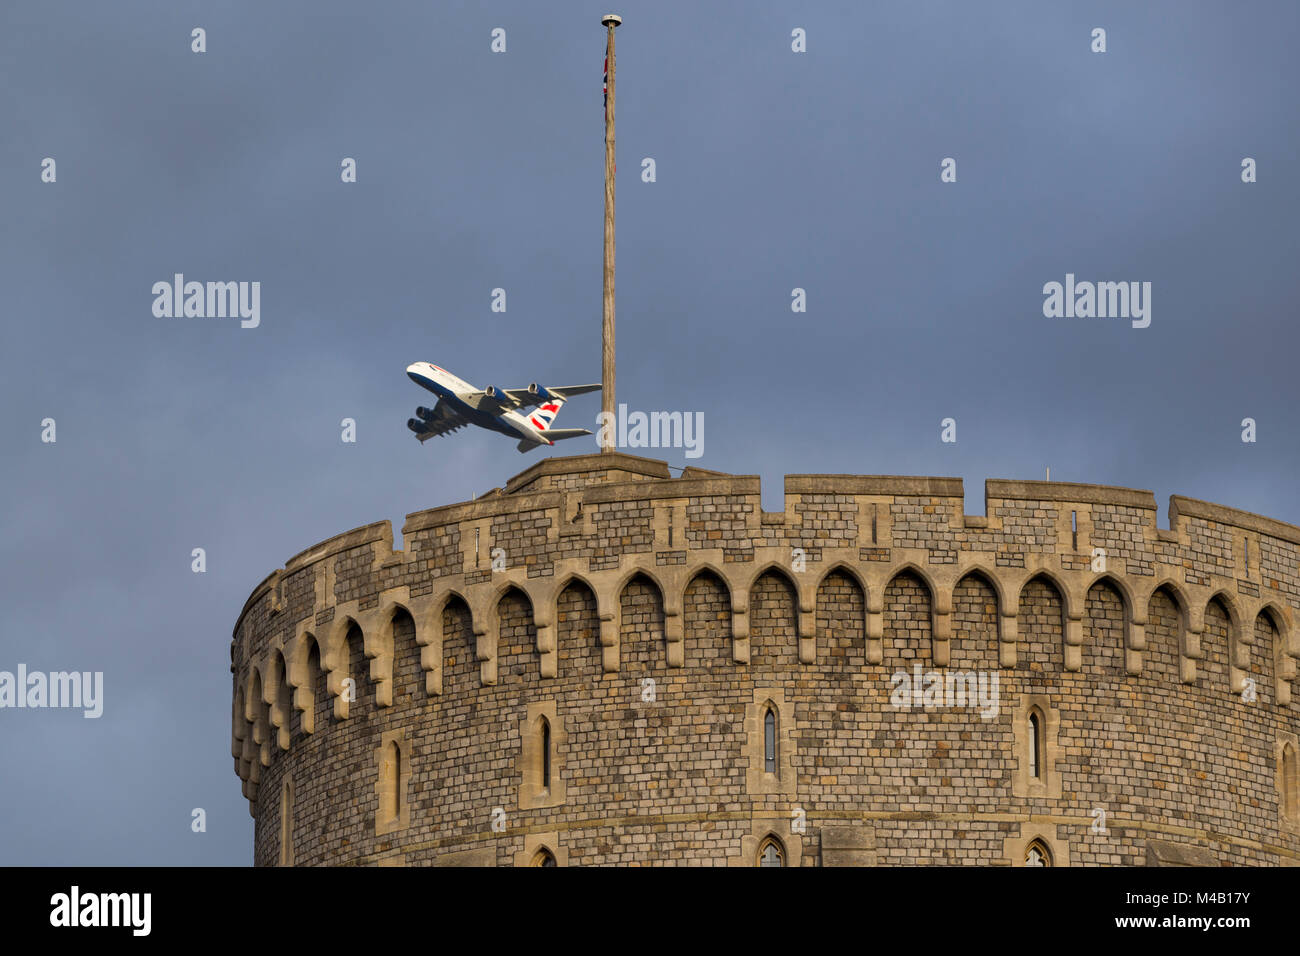 Un BA380 / aeroplano / aereo / volo dall aeroporto di Heathrow che passa al di sopra della torre rotonda del Castello di Windsor durante la salita dopo il decollo. Foto Stock